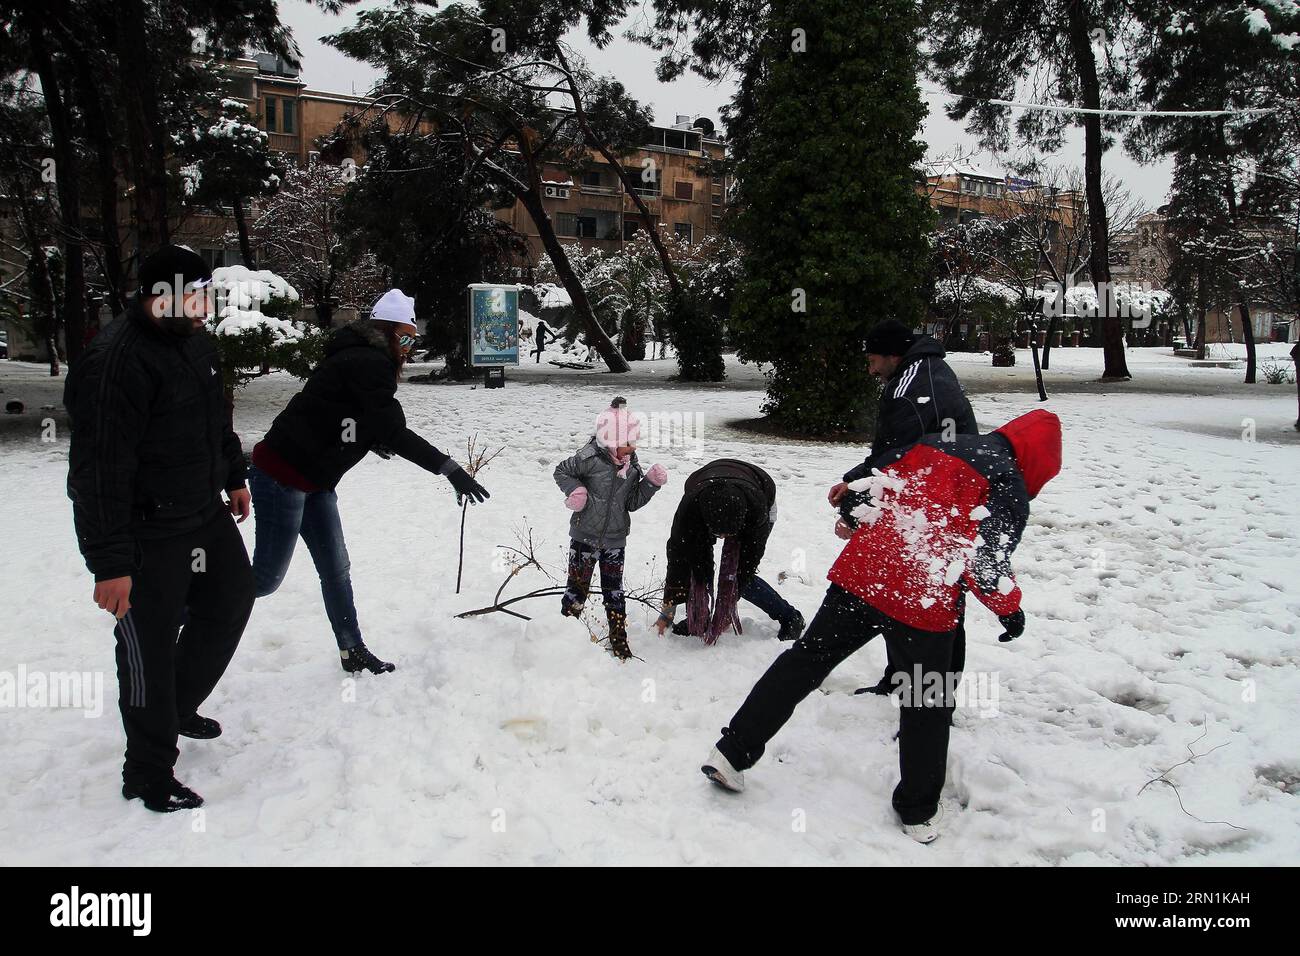 AKTUELLES ZEITGESCHEHEN SYRIEN - Invierno en Dámaso (150107) - DAMASCO, 7 de enero de 2015 -- Sirios juegan con la nieve en una calle cubierta de nieve en Damasco, Siria, 7 de enero de 2015. )(hy) SIRIA-DAMASCO-NIEVE BassemxTellawi PUBLICATIONxNOTxINxCHN NOTICIAS ACTUALIDAD SIRIA Invierno en Damasco Damasco Damasco ENE 7 2015 Juega con nieve EN una calle cubierta de nieve en Damasco SIRIA ENE 7 2015 Hy SIRIA Damasco NIEVE PUBLICATIONxNOTxINxCHN Foto de stock